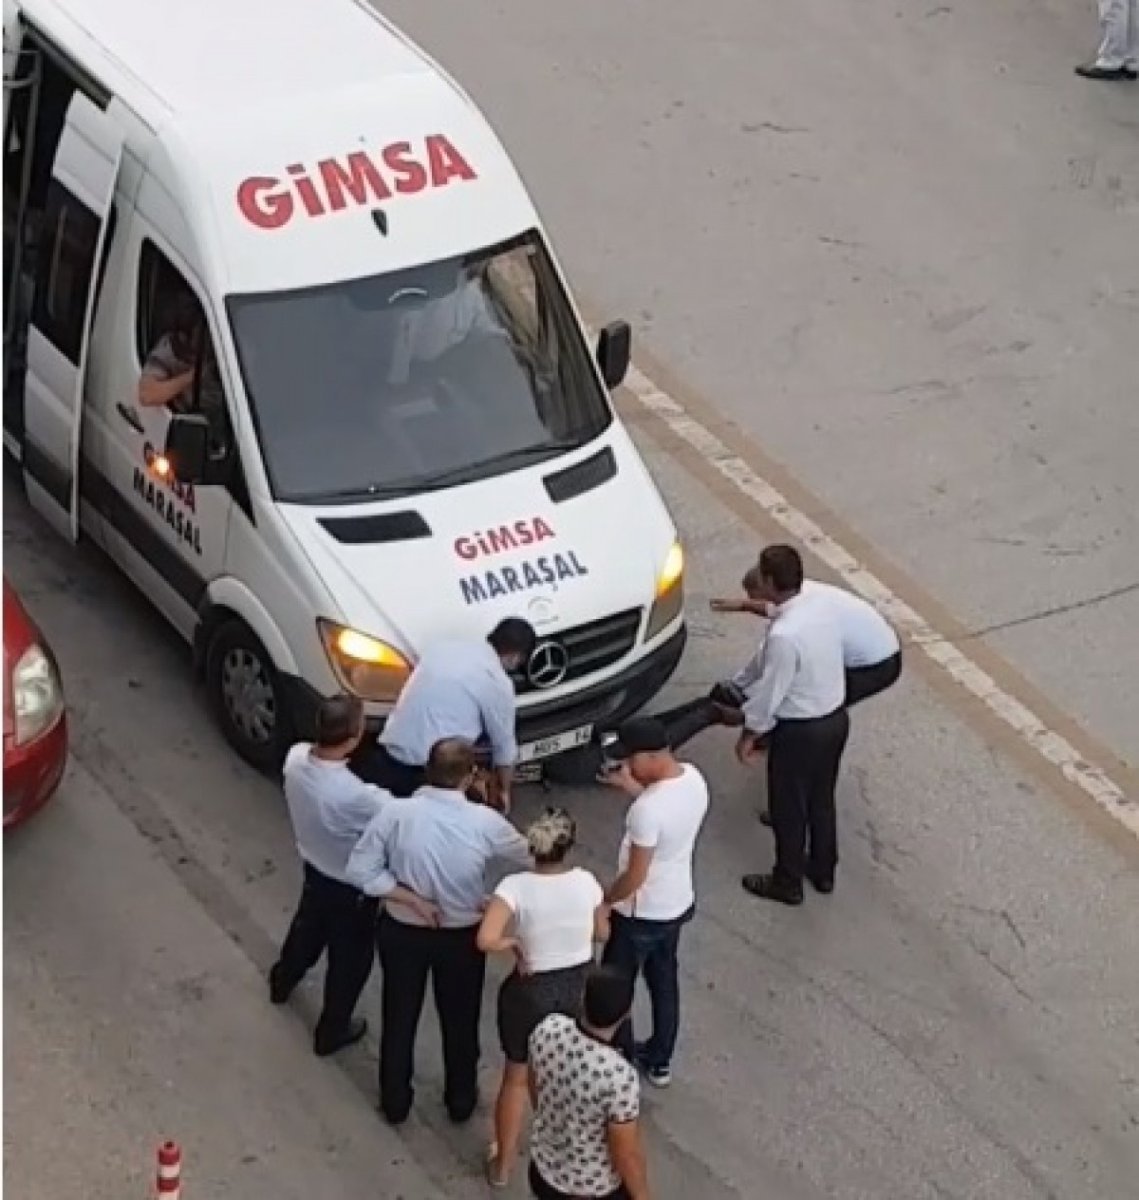 Ankara’da market fişi yüzünden servisten indirilince aracın altına girdi #1